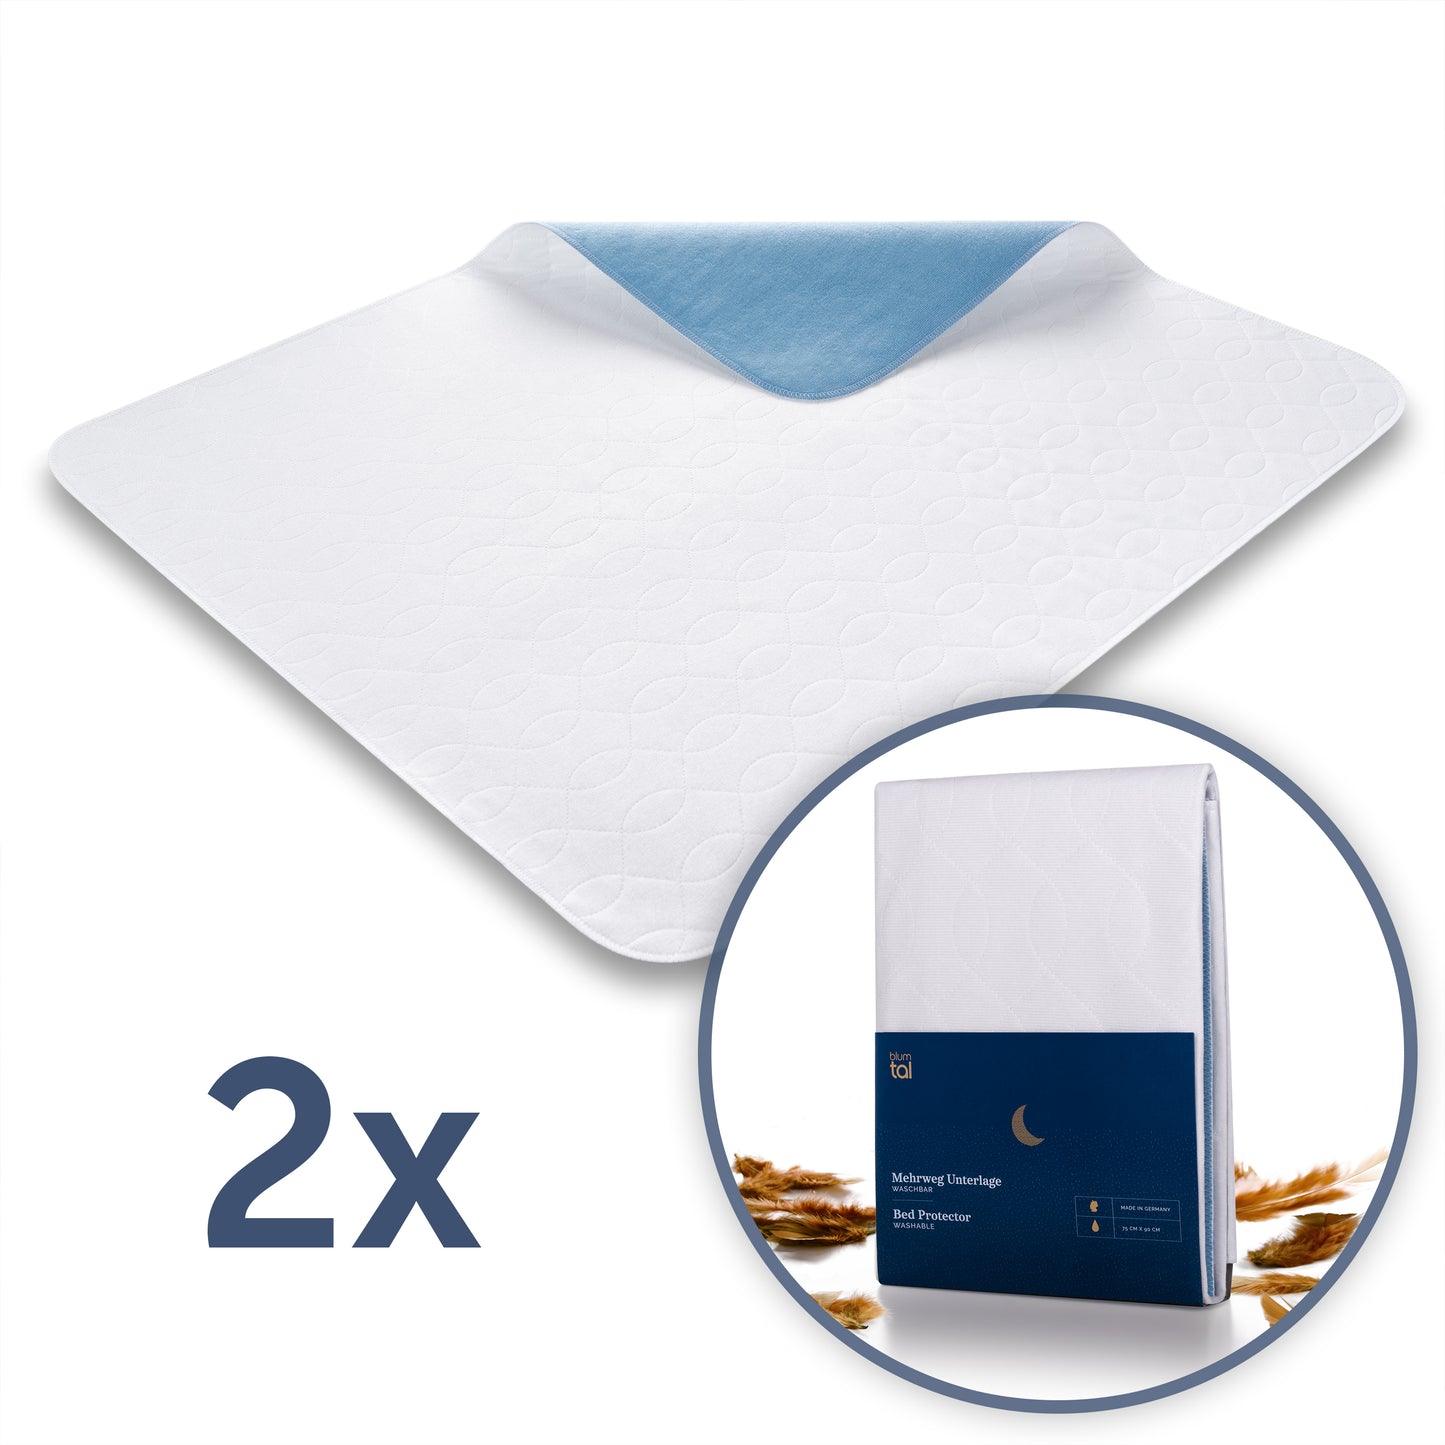 Wasserfeste Matratzenauflage gefaltet auf weißem Hintergrund mit Produktverpackung die Haltbarkeit und Hygiene für Betten verspricht.